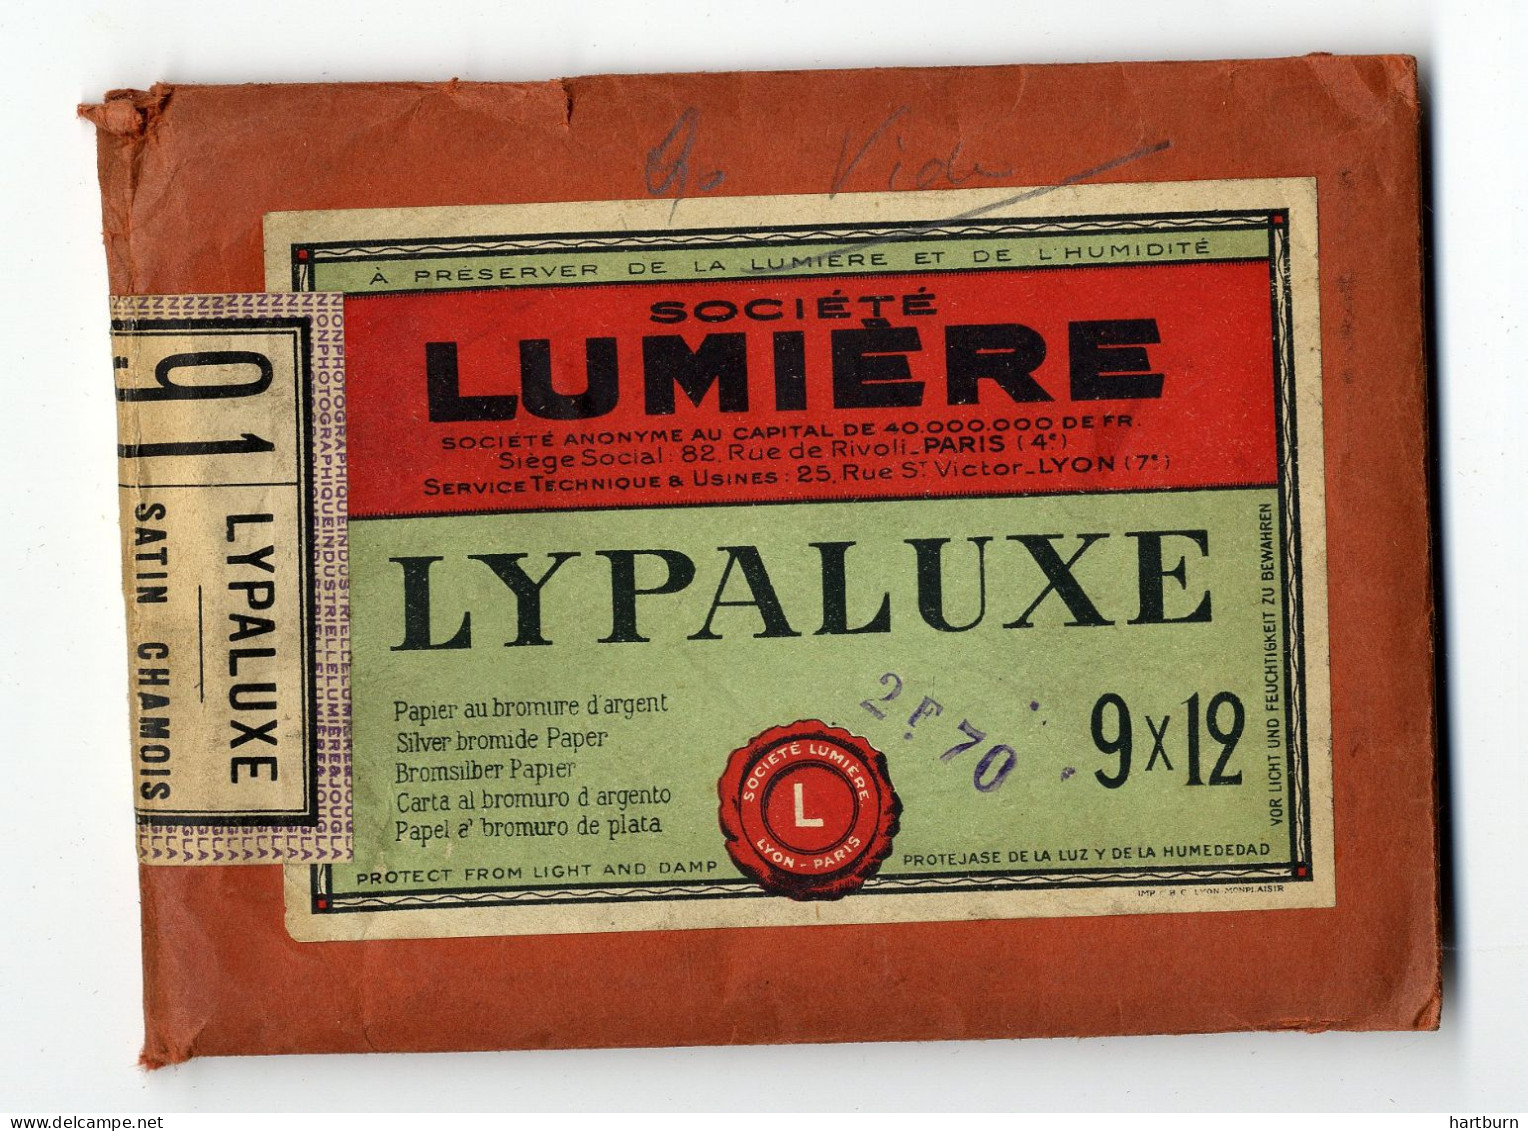 Societe Lumiere. Lypaluxe. Rue St. Victor, Lyon - Matériel & Accessoires